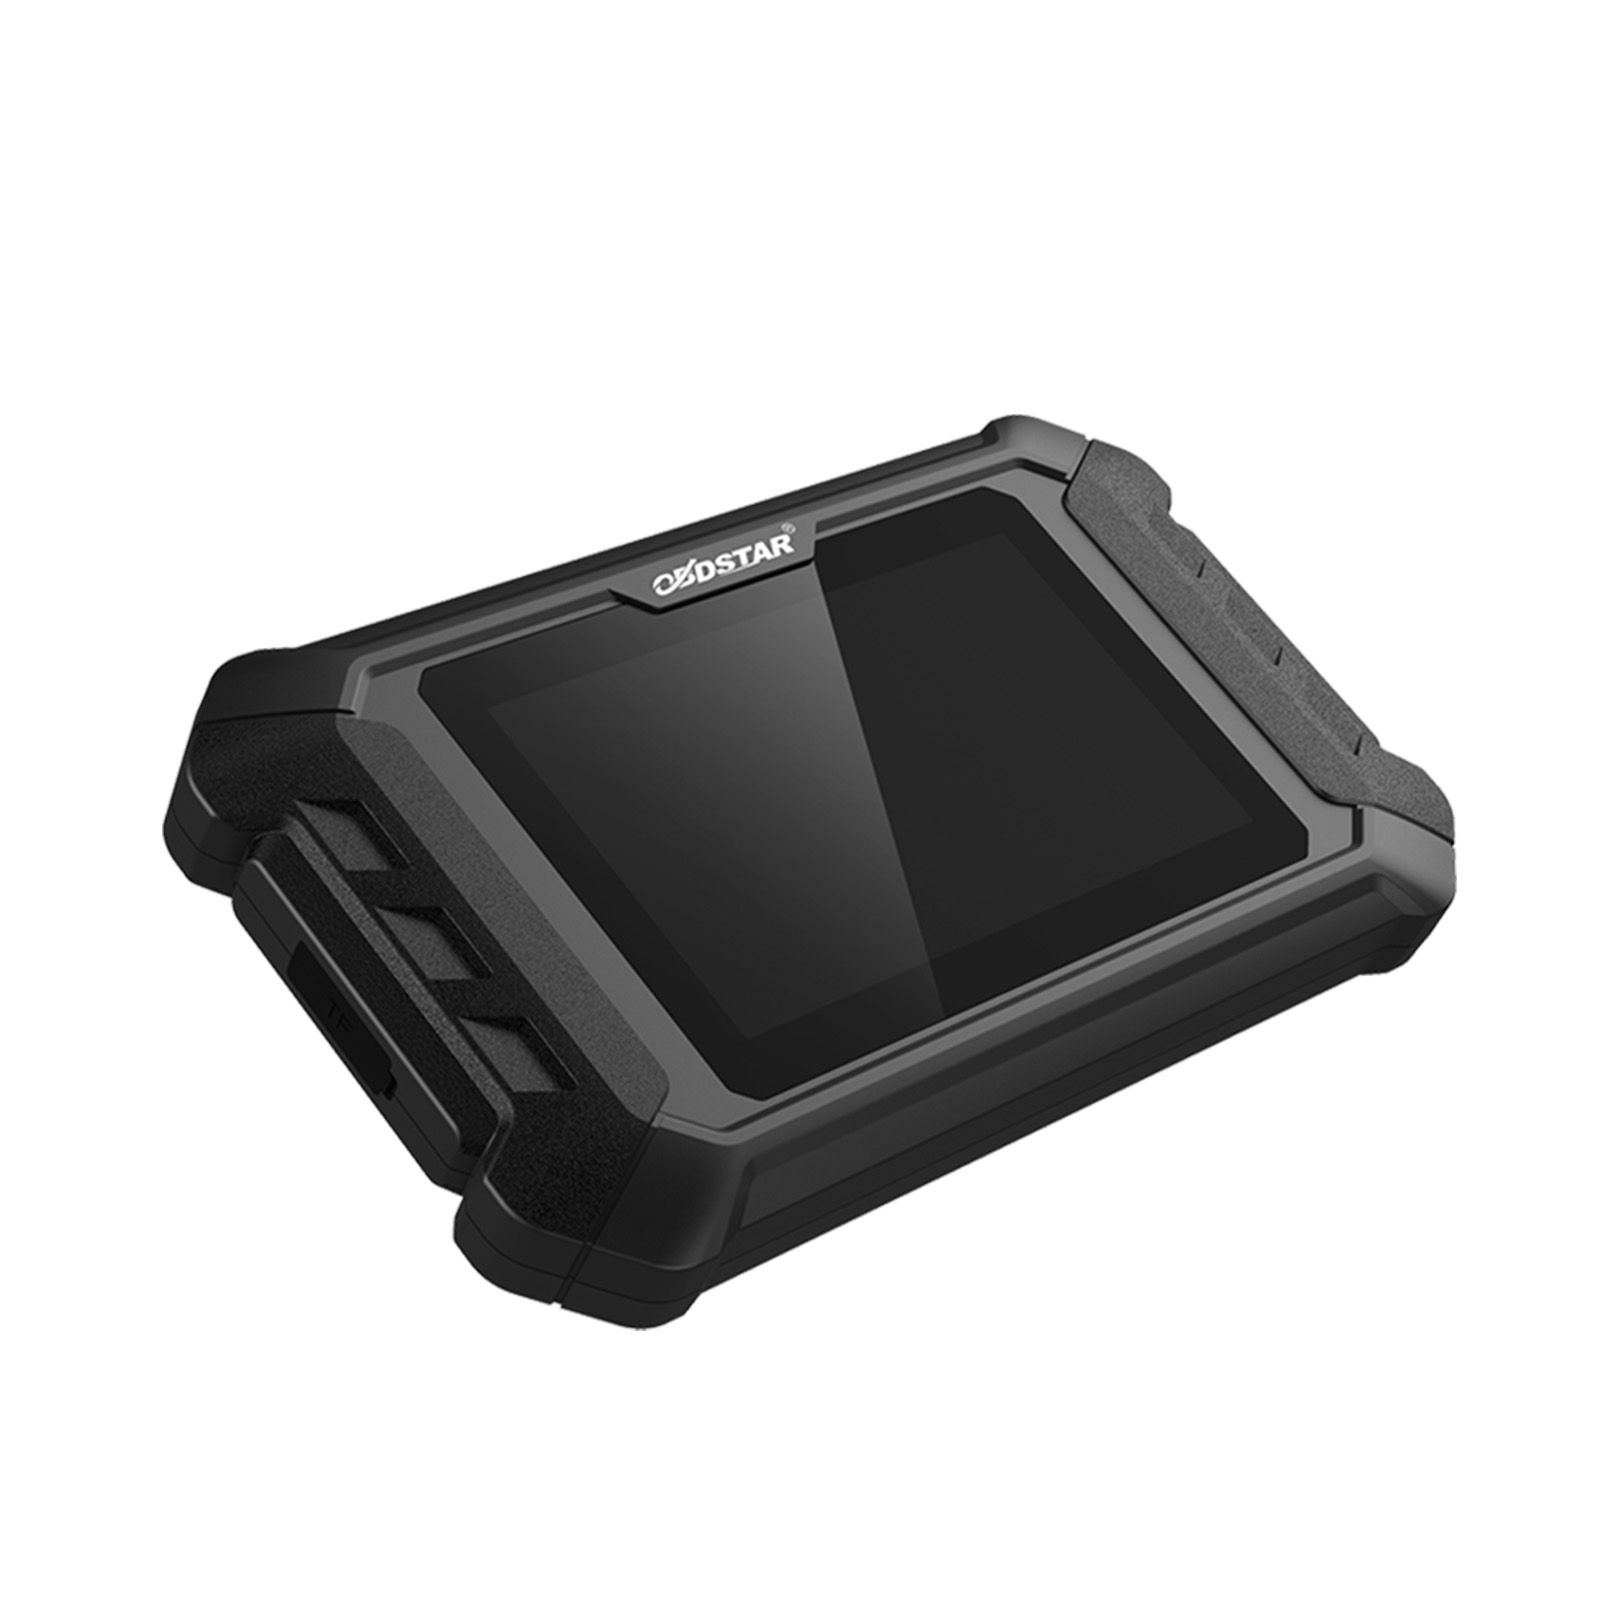 Obdstar iscan ktm / husqvarna herramienta inteligente de diagnóstico de motocicletas tabletas portátiles